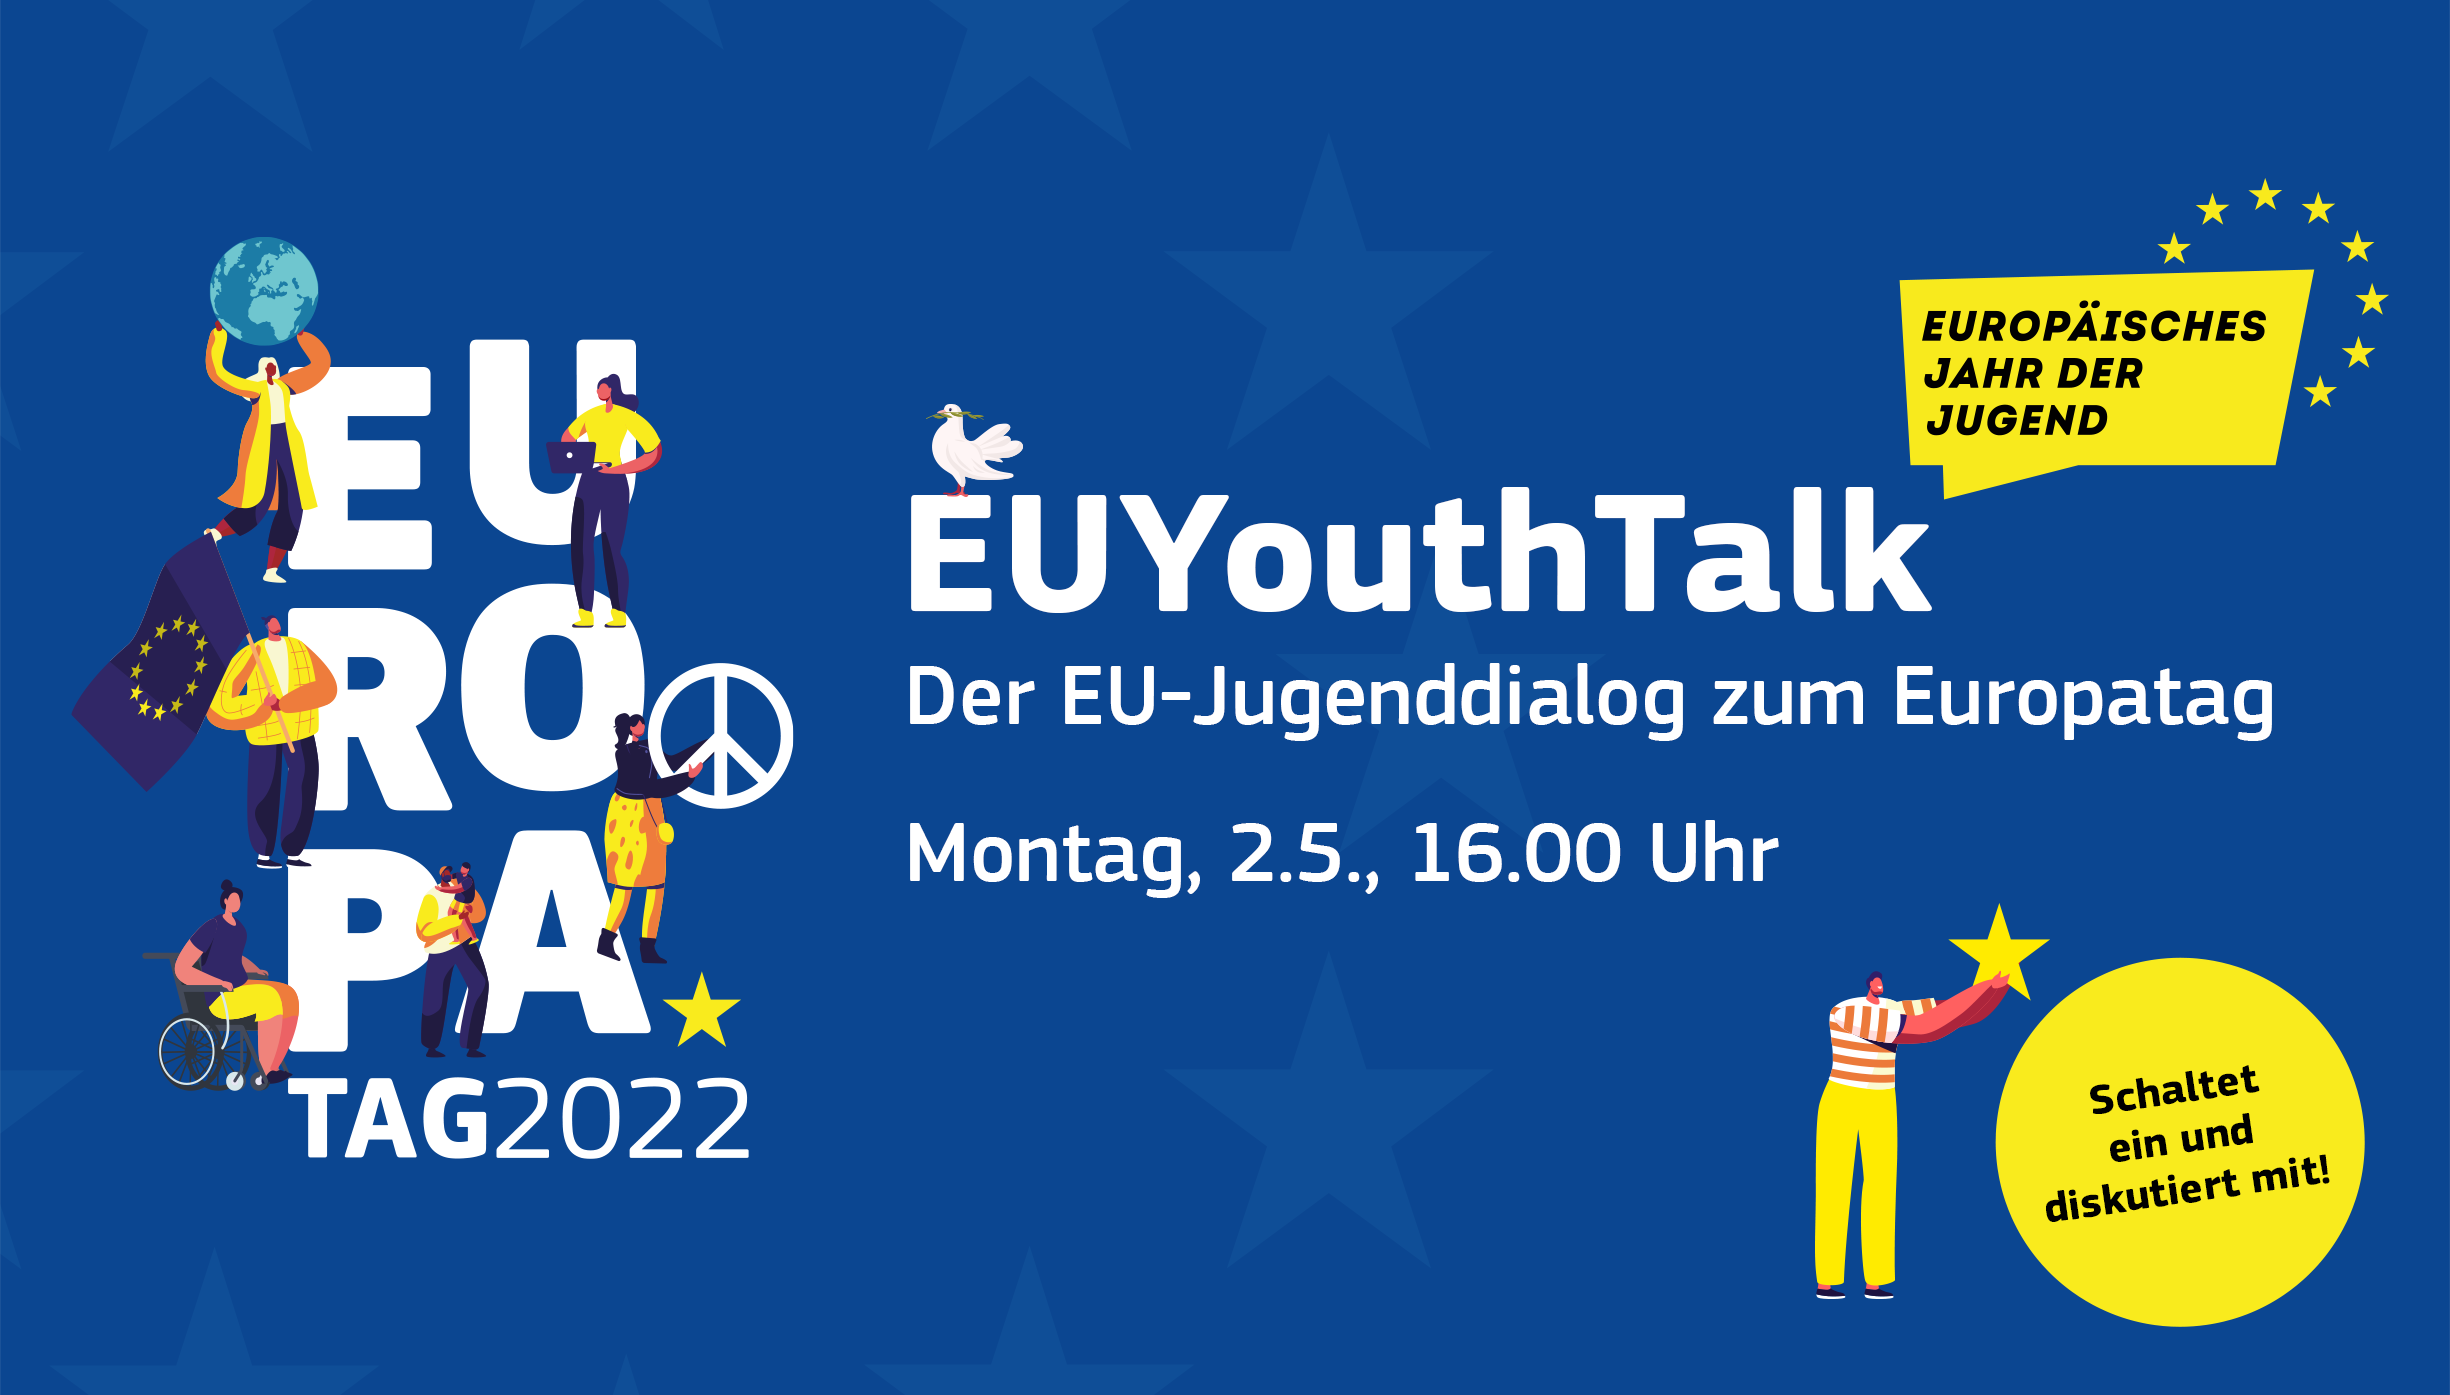 EU-Jugenddialog zum Europatag